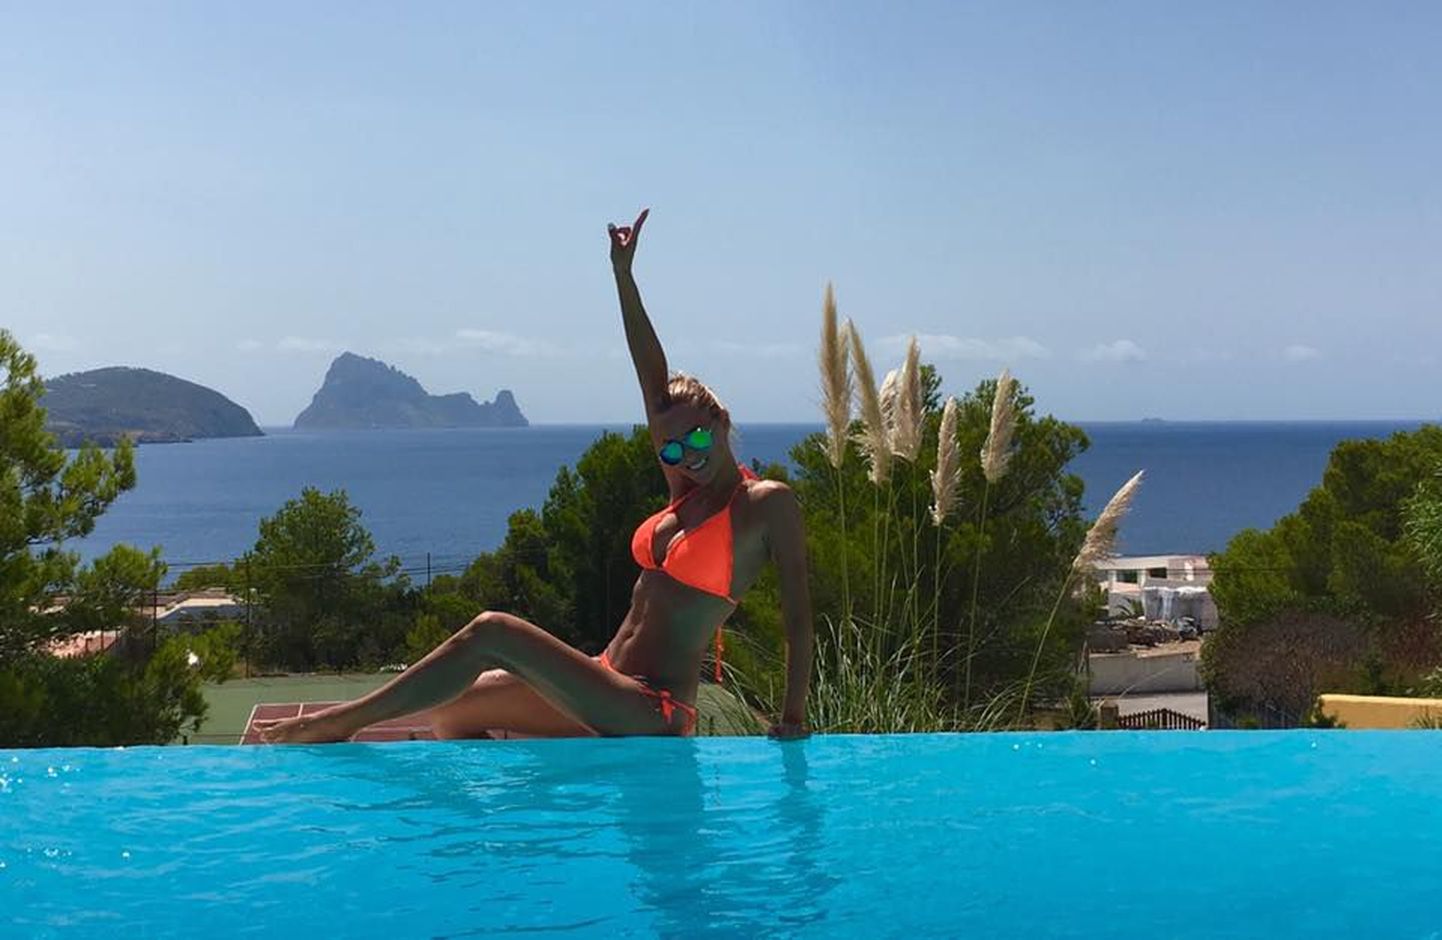 Laura Kõrgemäe naudib elu Ibizal